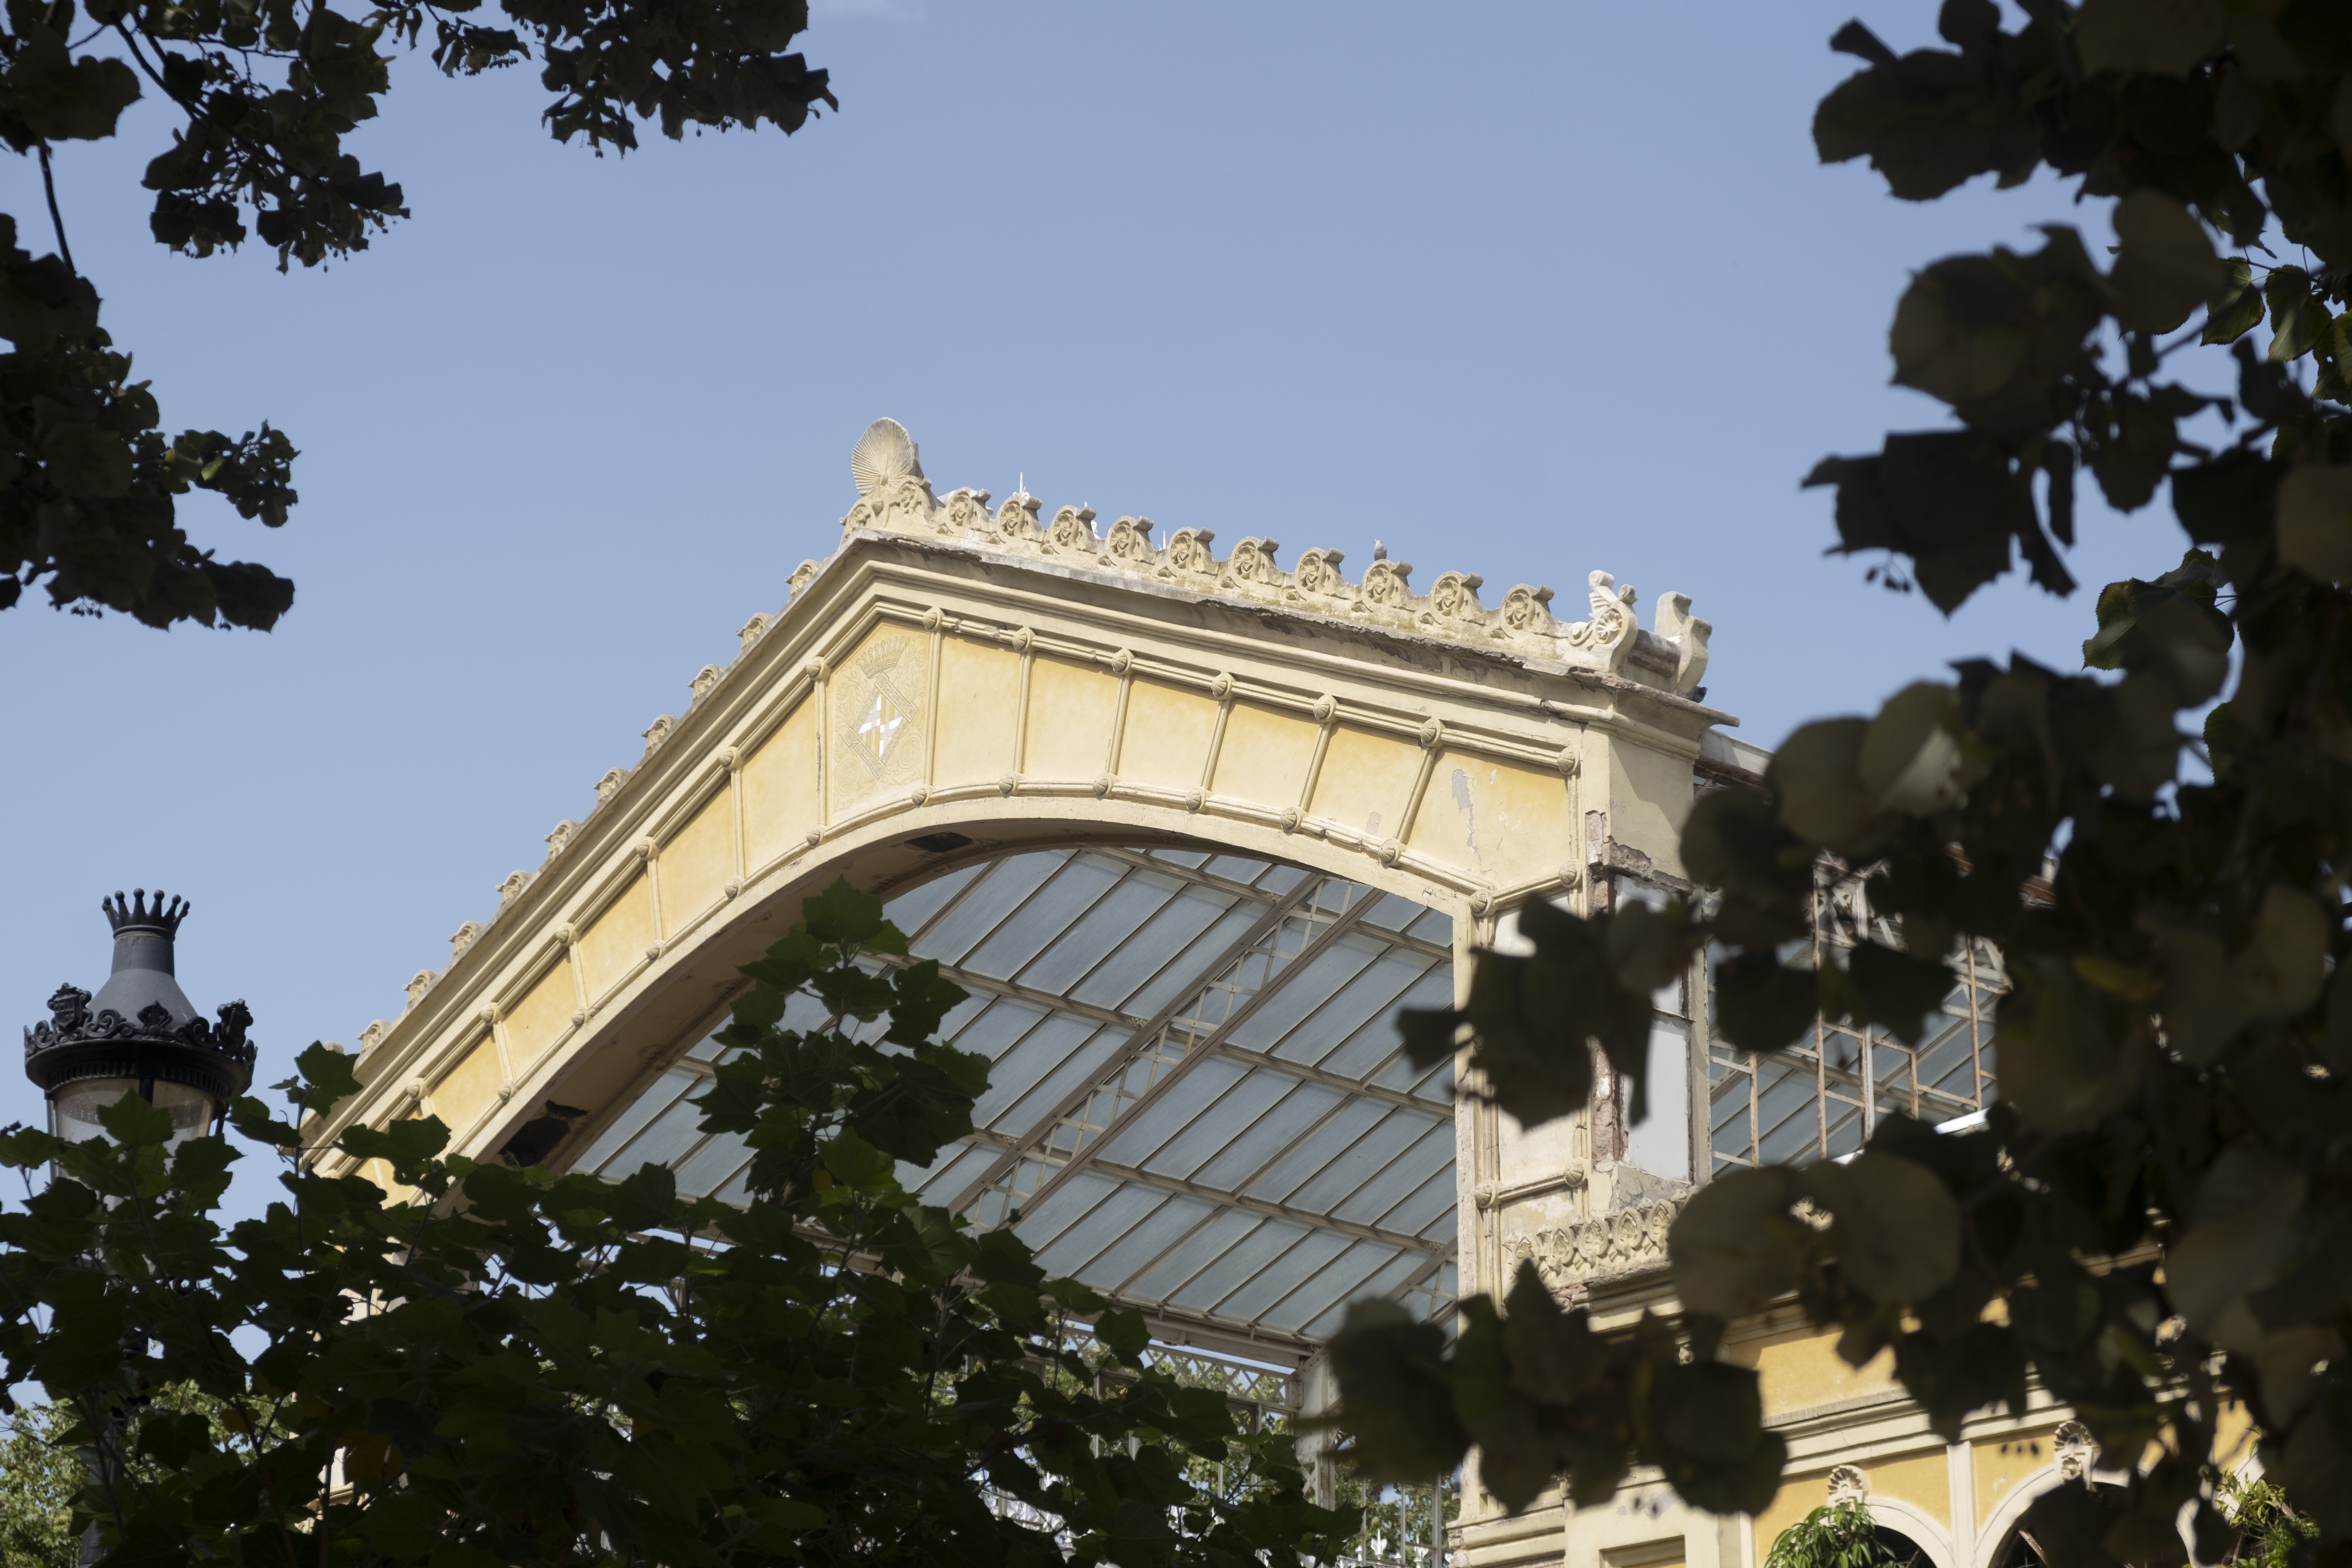 L’Hivernacle i el palau del parc del Laberint es rehabilitaran a l’estiu